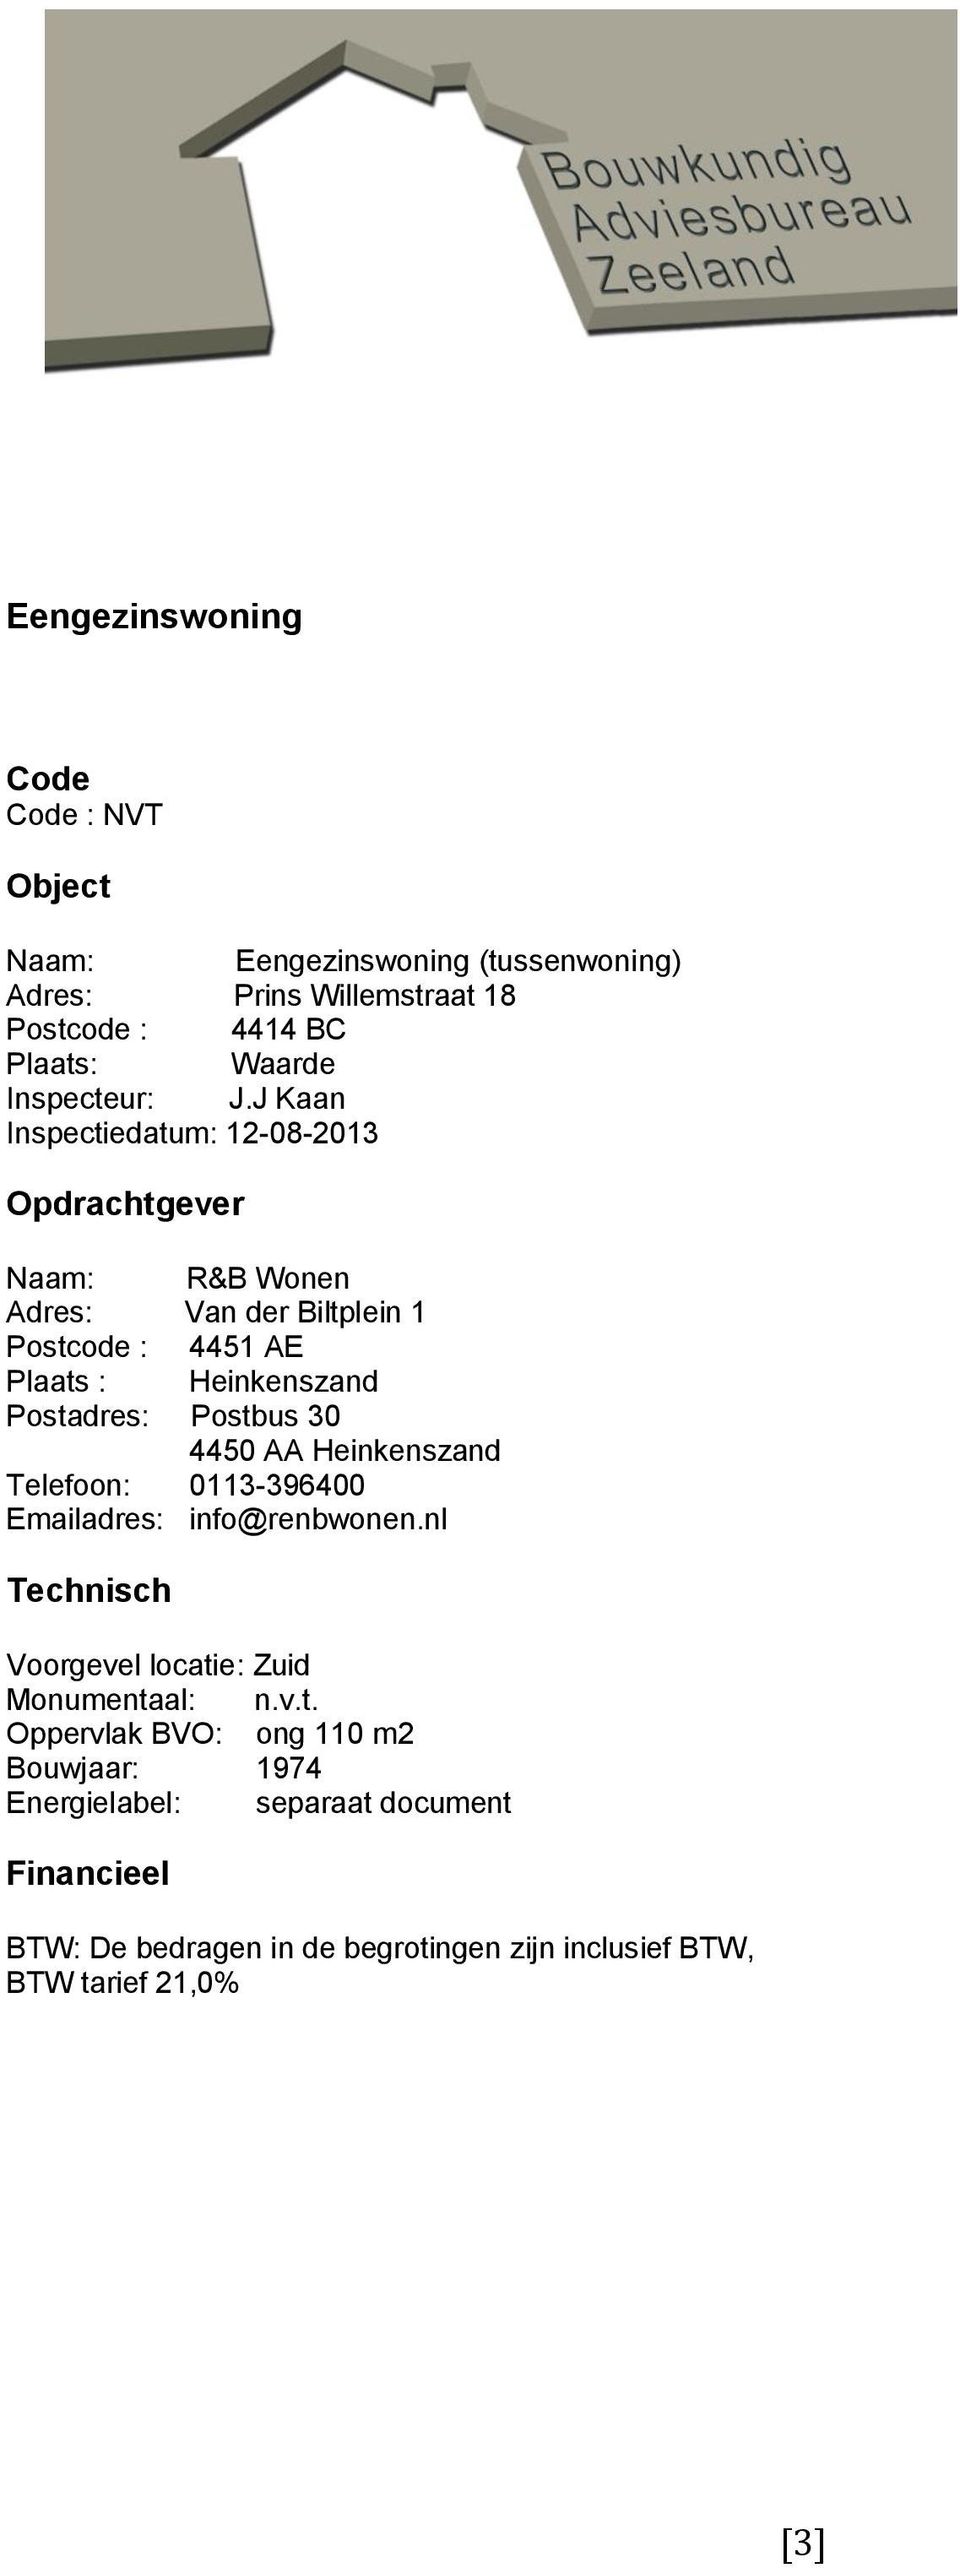 J Kaan Inspectiedatum: 12-08-2013 Opdrachtgever Naam: R&B Wonen Adres: Van der Biltplein 1 Postcode : 4451 AE Plaats : Heinkenszand Postadres: Postbus 30